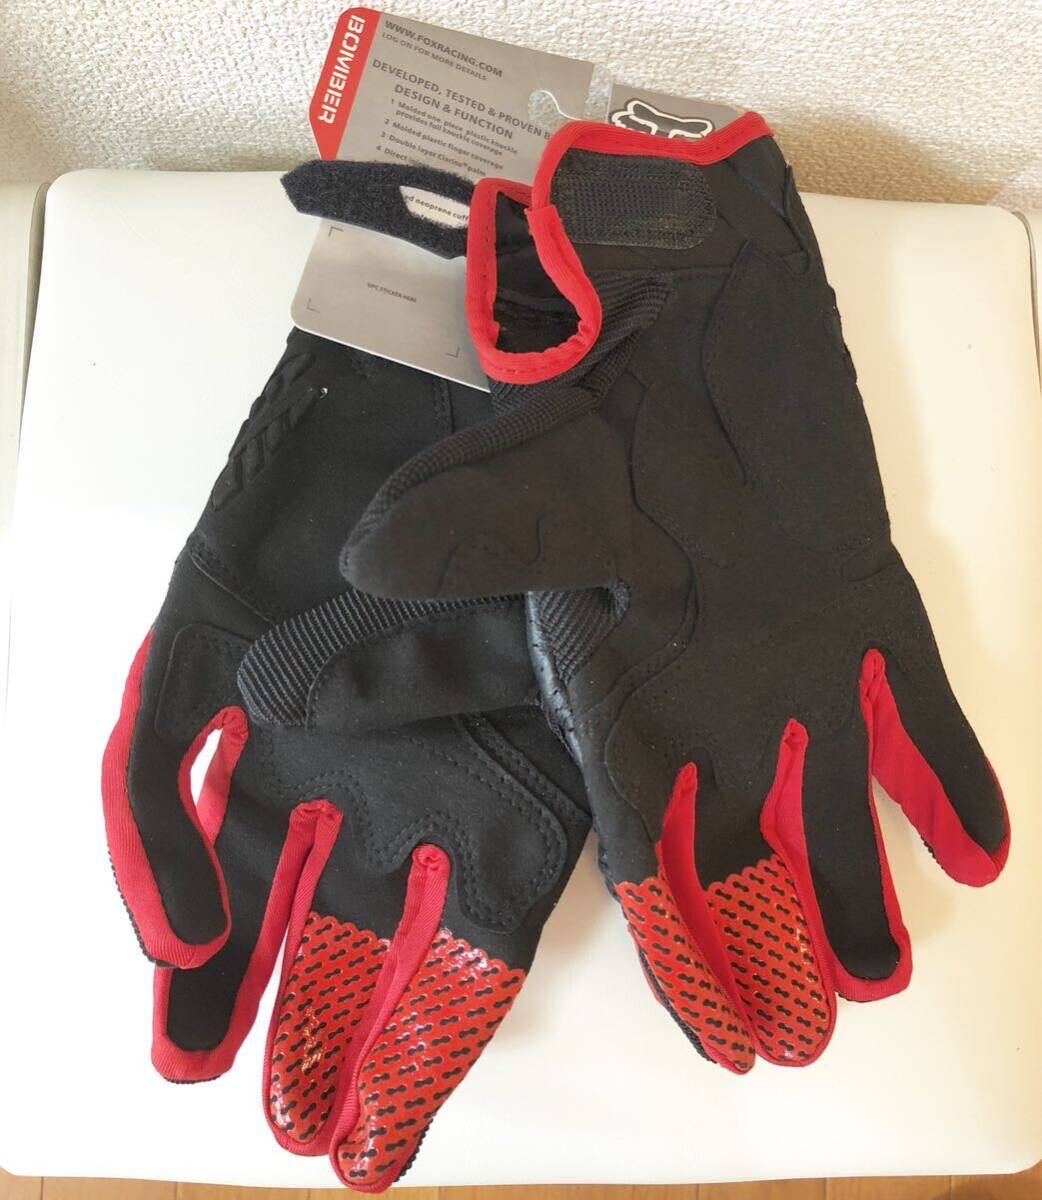 グローブ 手袋 メッシュ バイクグローブ 新品 送料無料 黒赤 Mサイズ